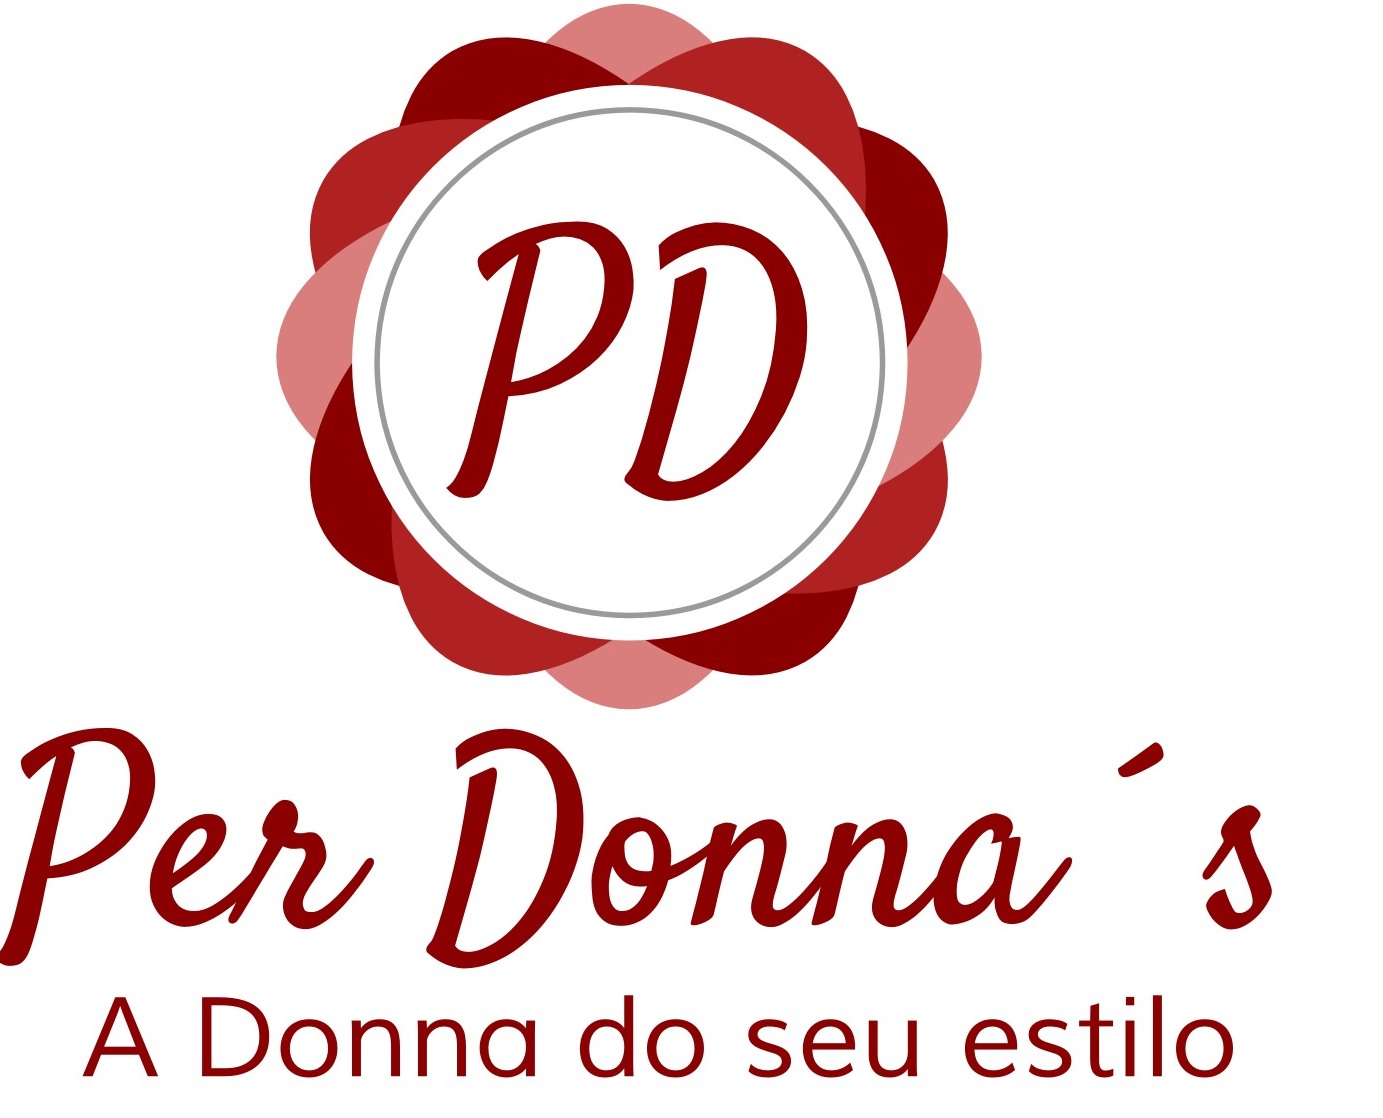 www.perdonnas.com.br